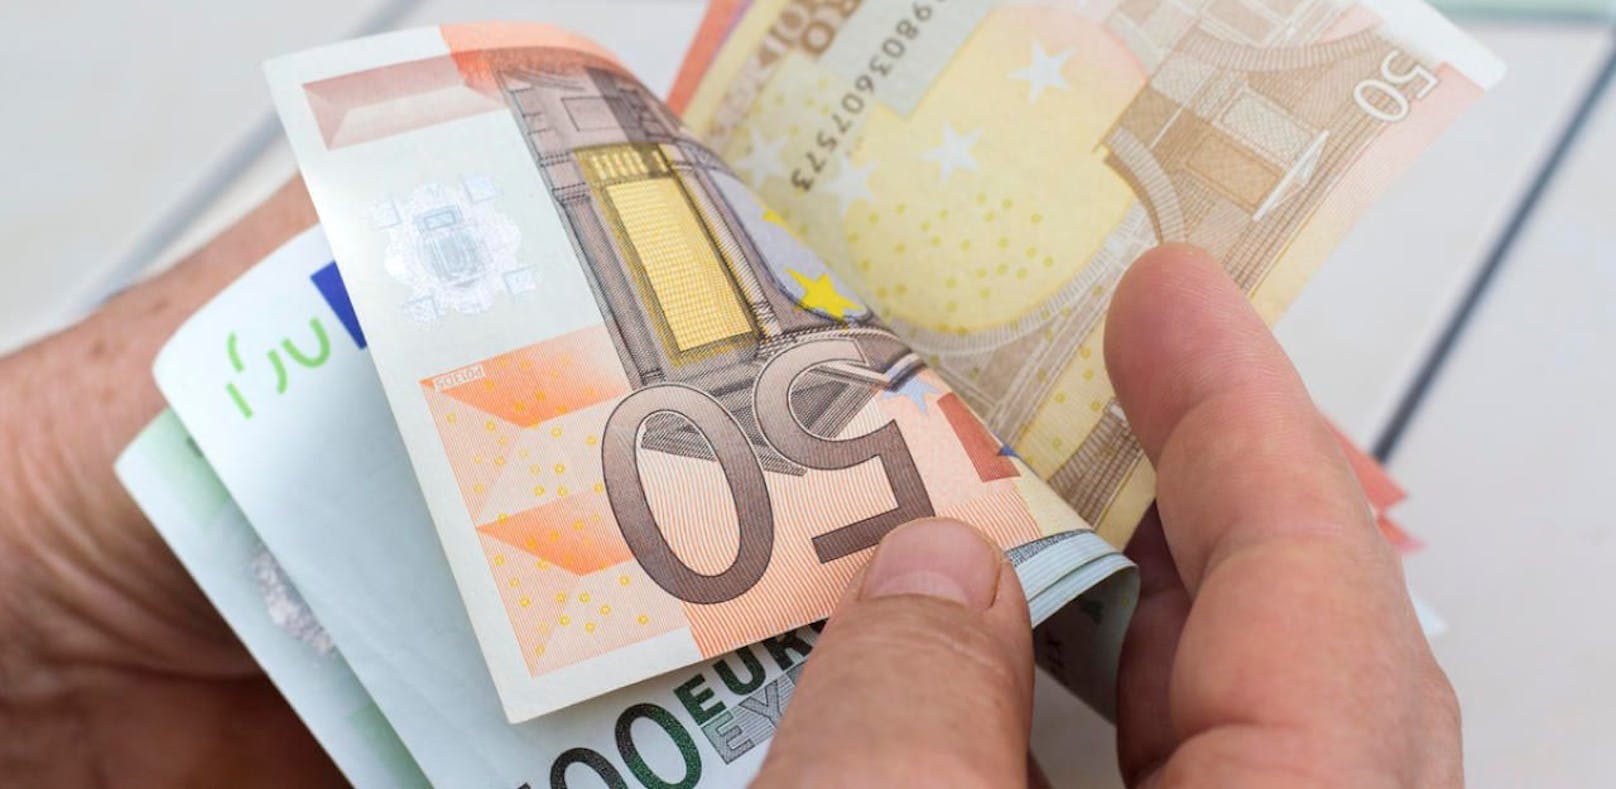 Der 62-Jährige fand mehrere tausend Euro und brachte das Geld zur Polizei